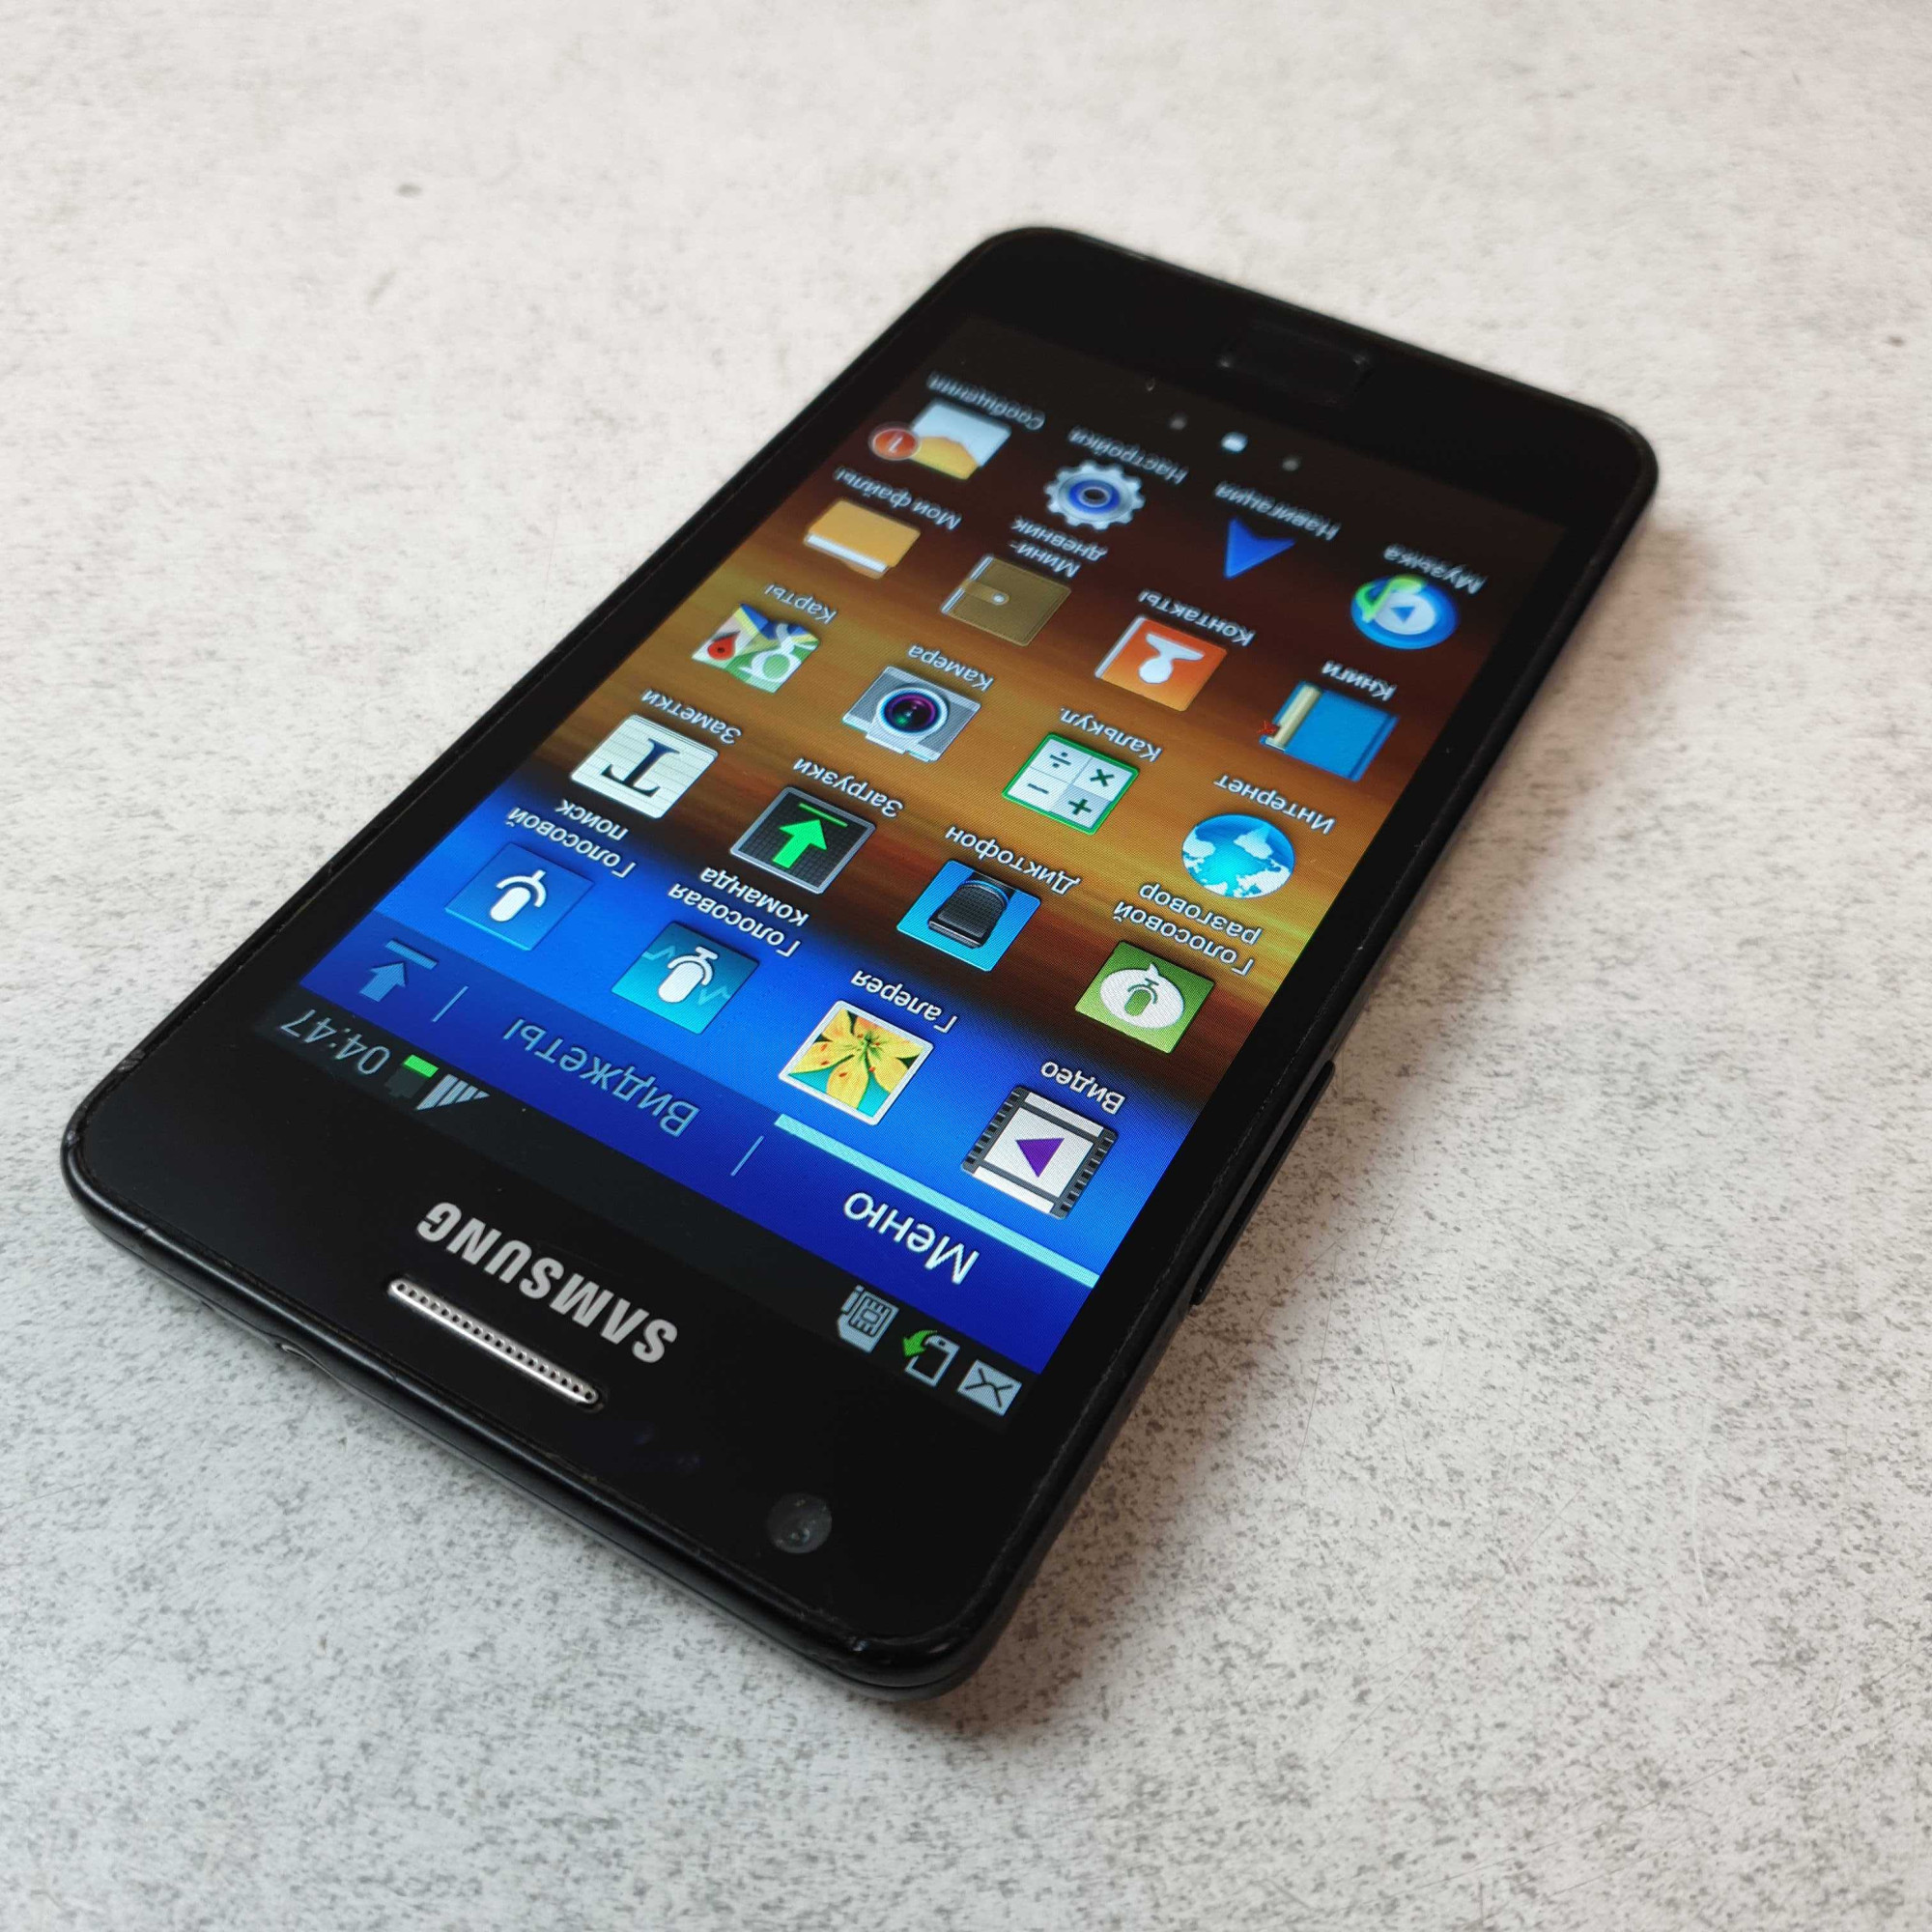 Samsung Galaxy S2 (GT-I9100) 1/16Gb  8